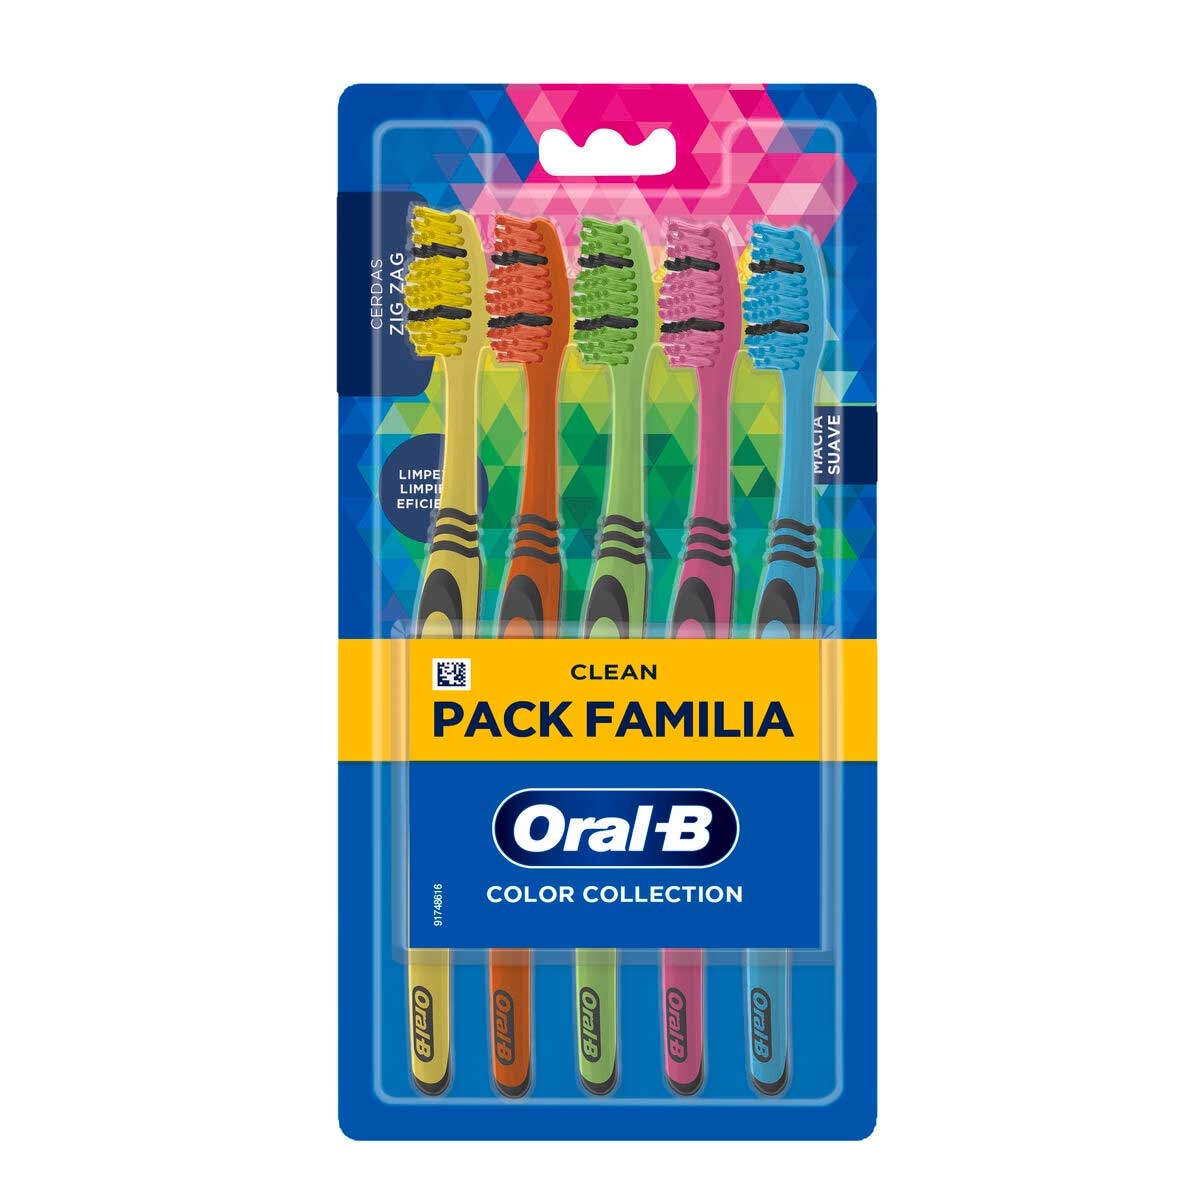 Escova de Dente Oral-B Color Collection Macia Pack Família com 5 unidades